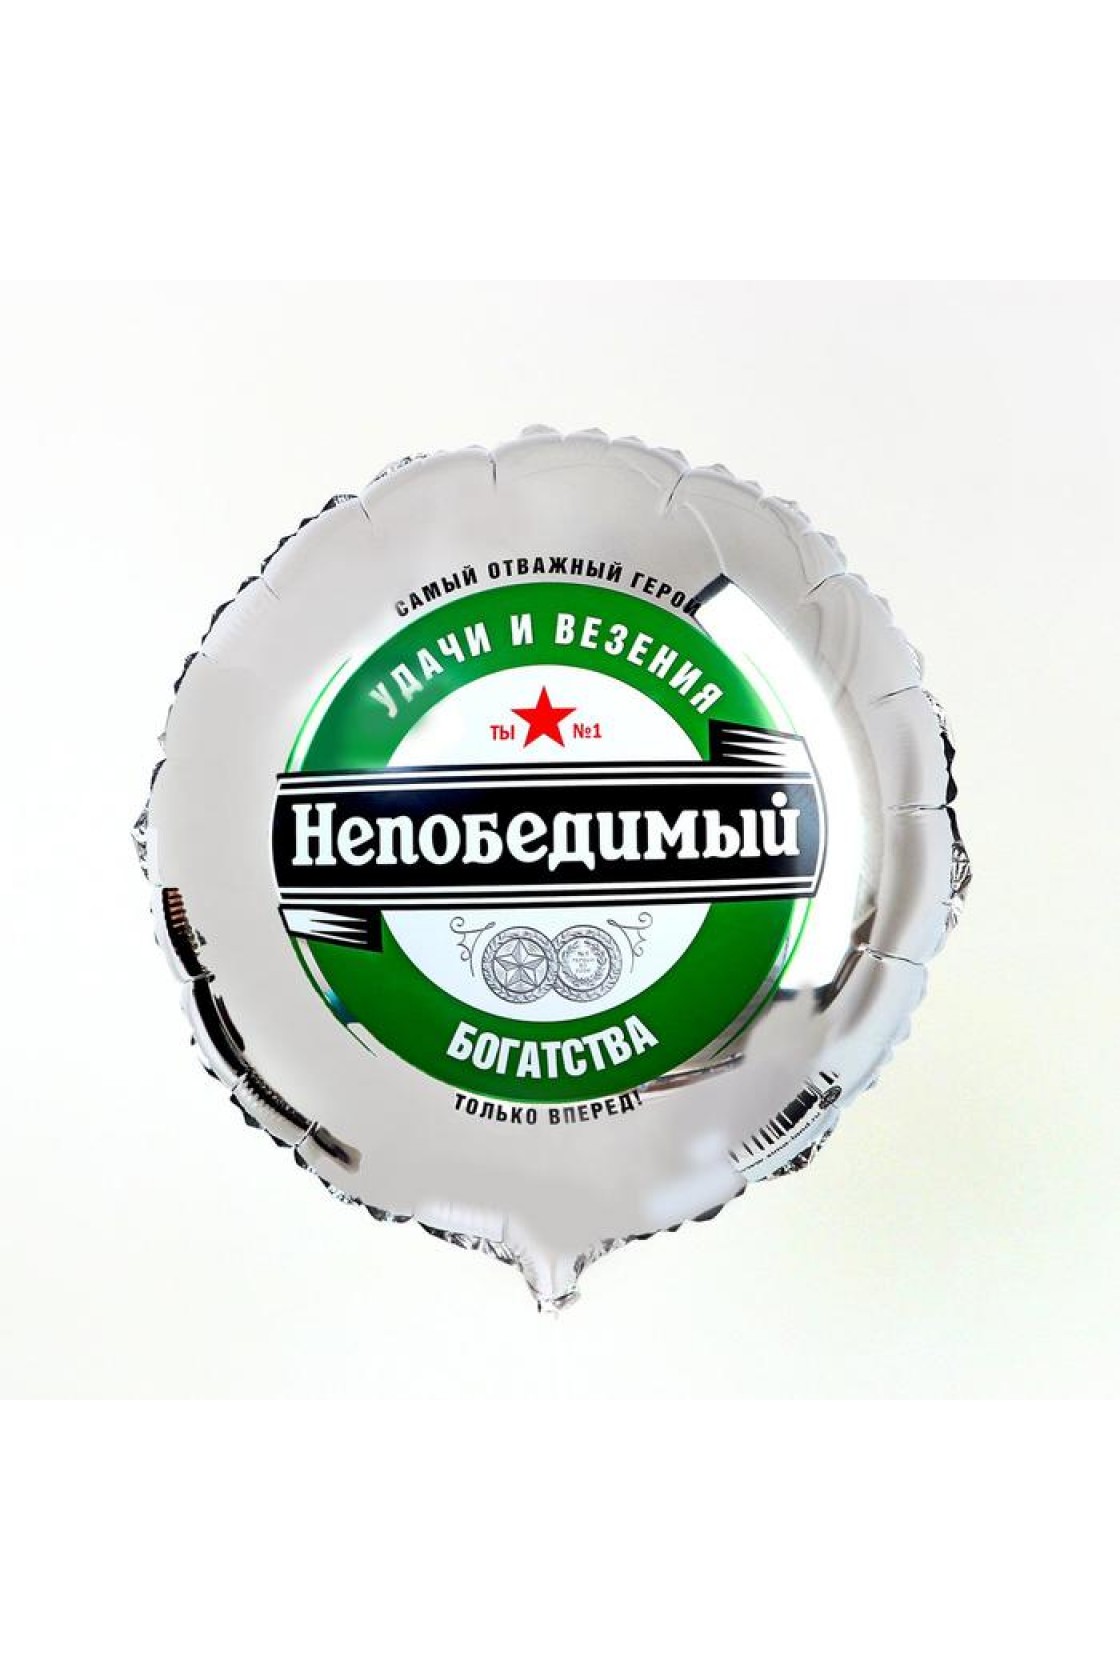 Купить С Круг Непобедимый в Новосибирске с доставкой